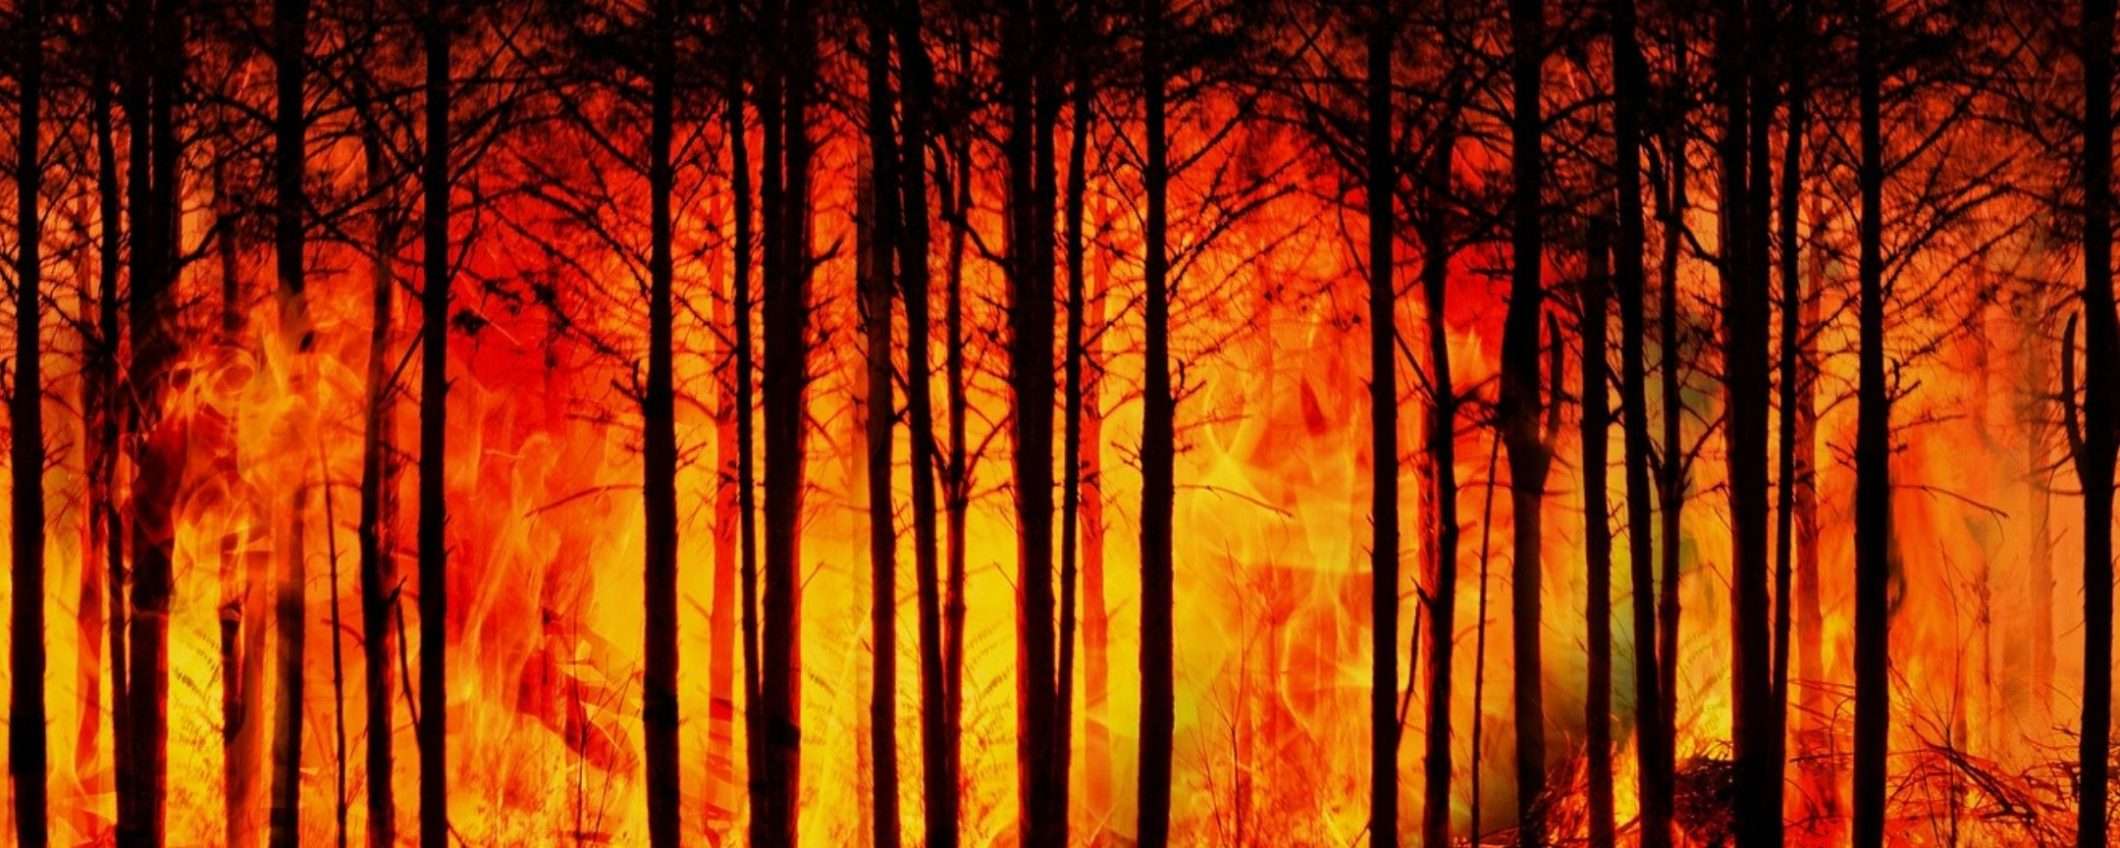 Incendi negli USA: 4 volte più grandi e 3 volte più frequenti